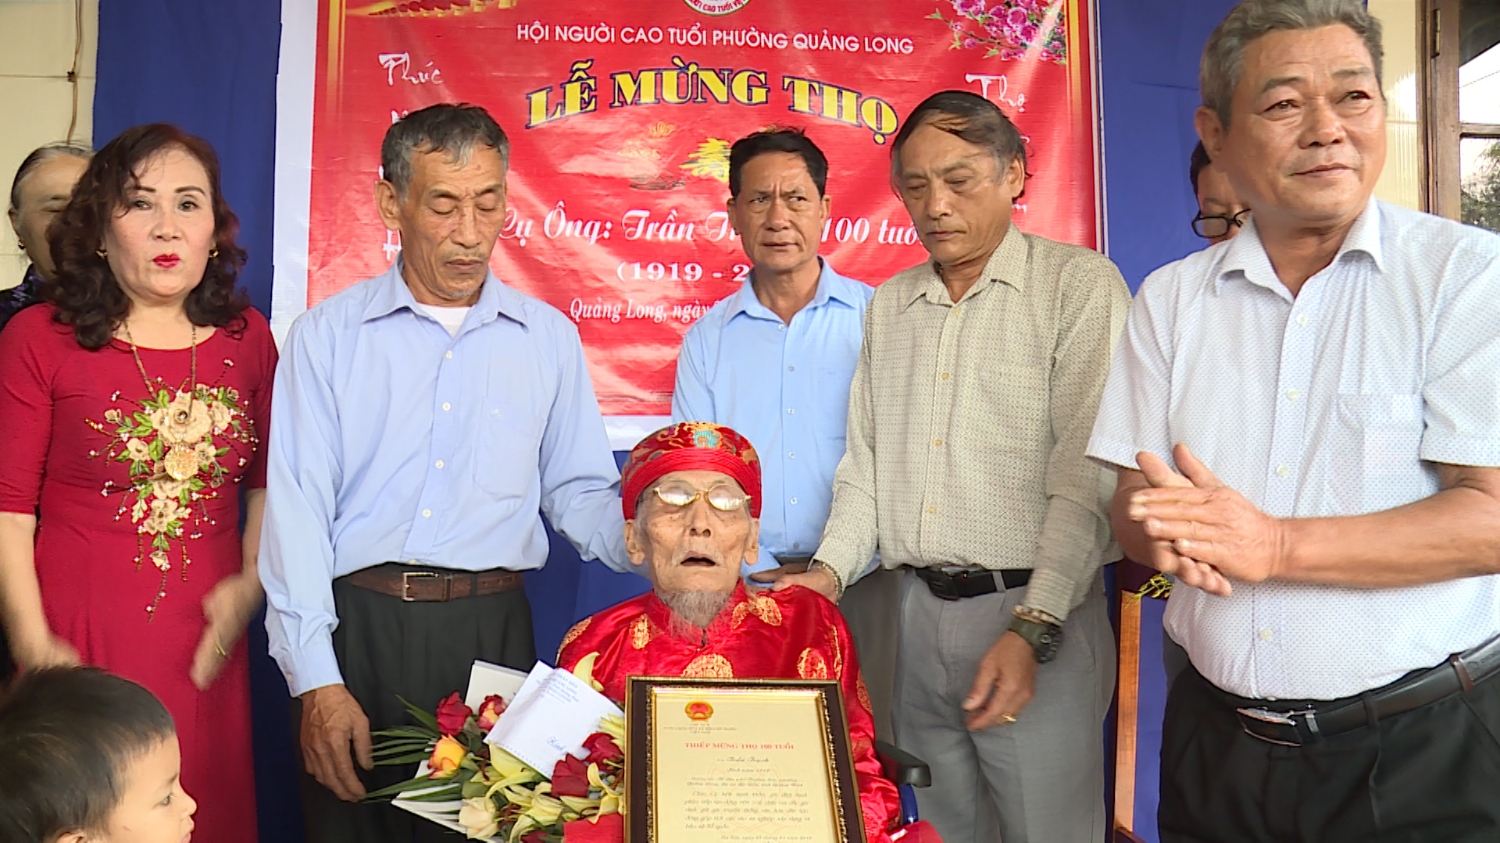 Phường Quảng Long tổ chức lễ mừng thọ cho Cán bộ lão thành Cách mạng.